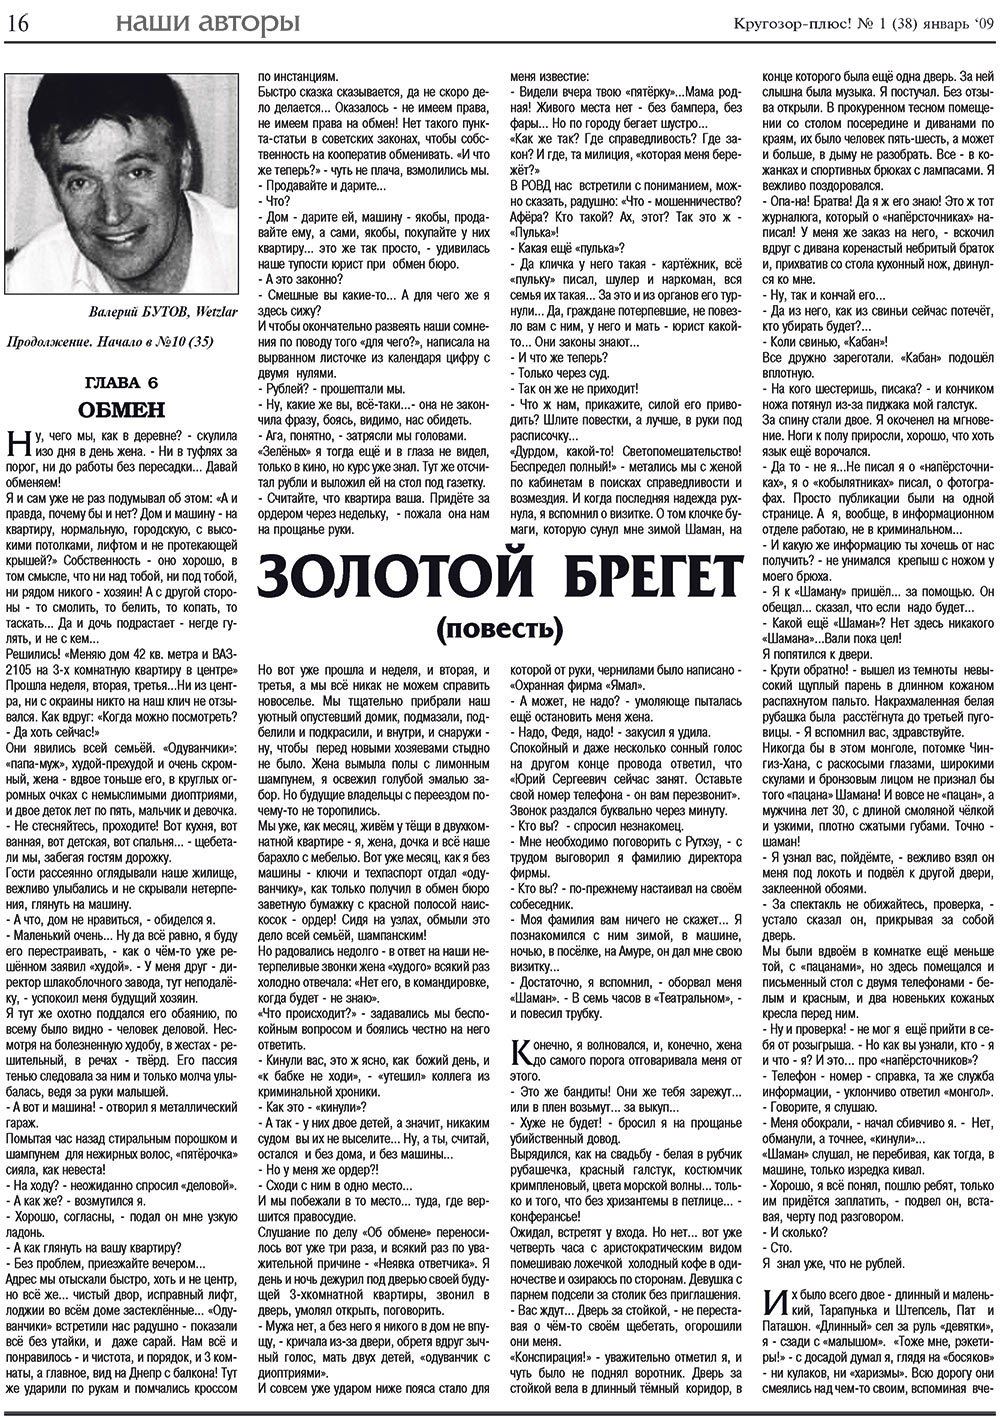 Кругозор плюс!, газета. 2009 №1 стр.16